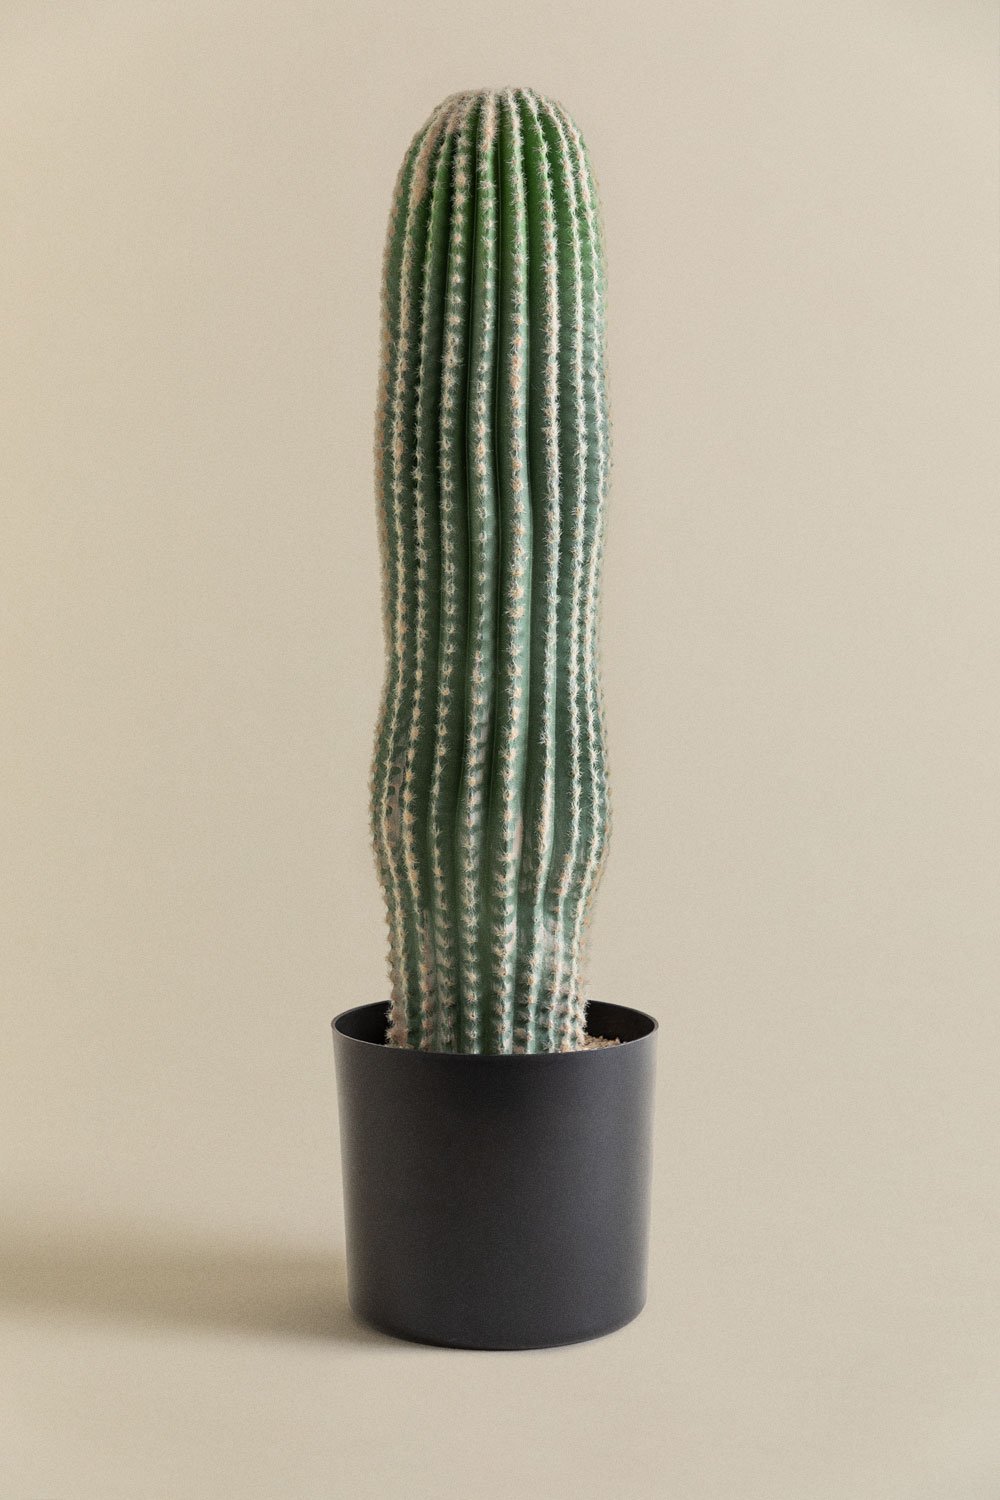 Künstlicher Kaktus Carnegiea 72 cm, Galeriebild 1